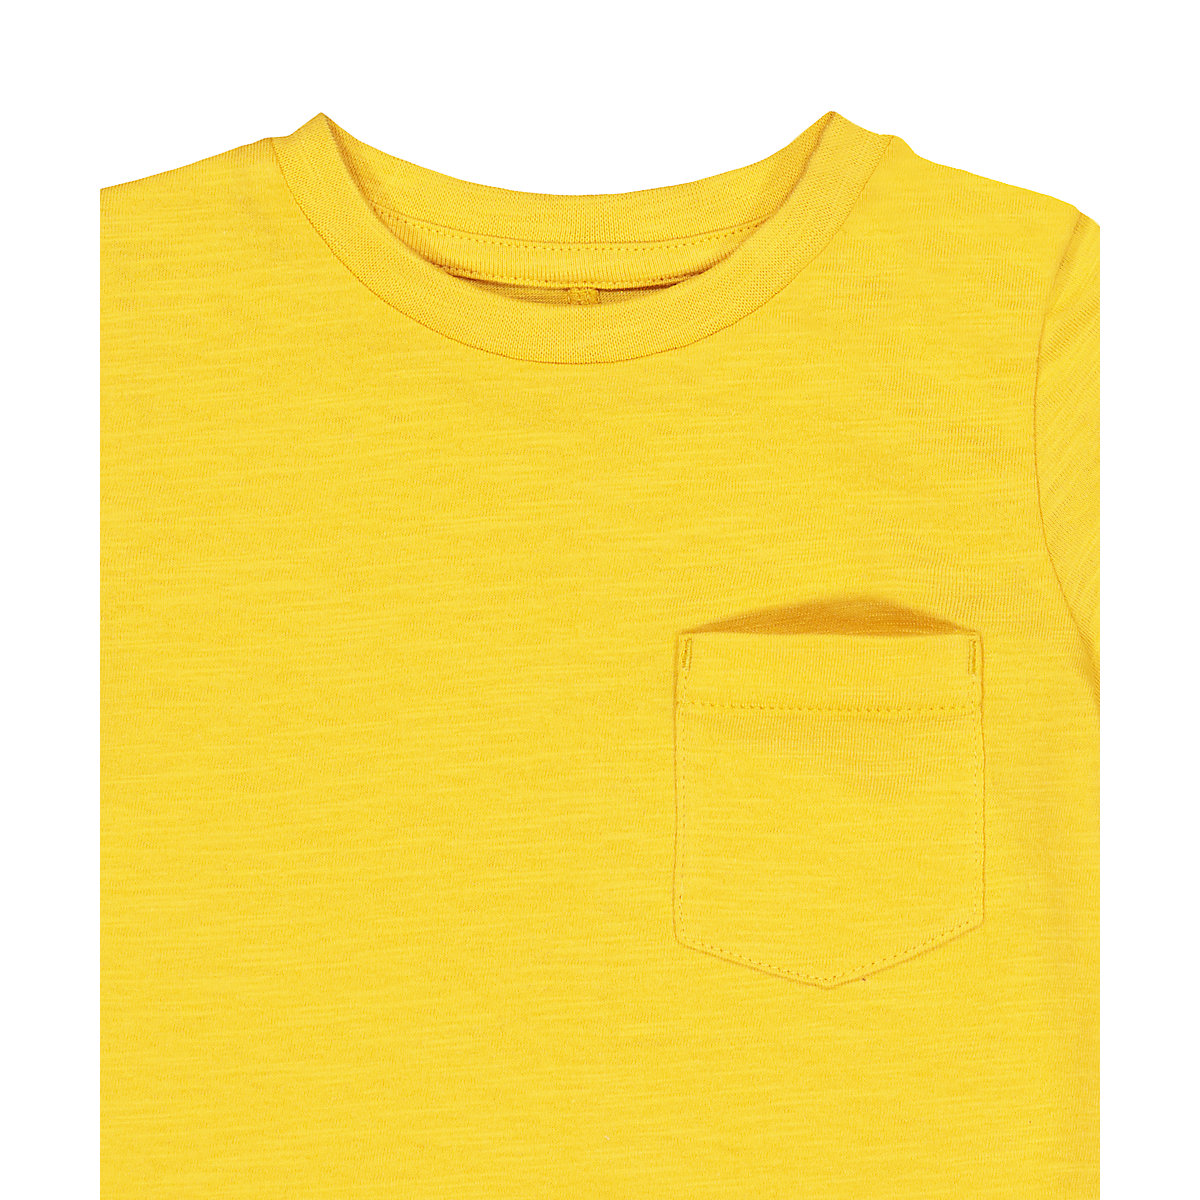 تی شرت پسرانه 27401 سایز 1.5 تا 10 سال مارک MOTHERCARE